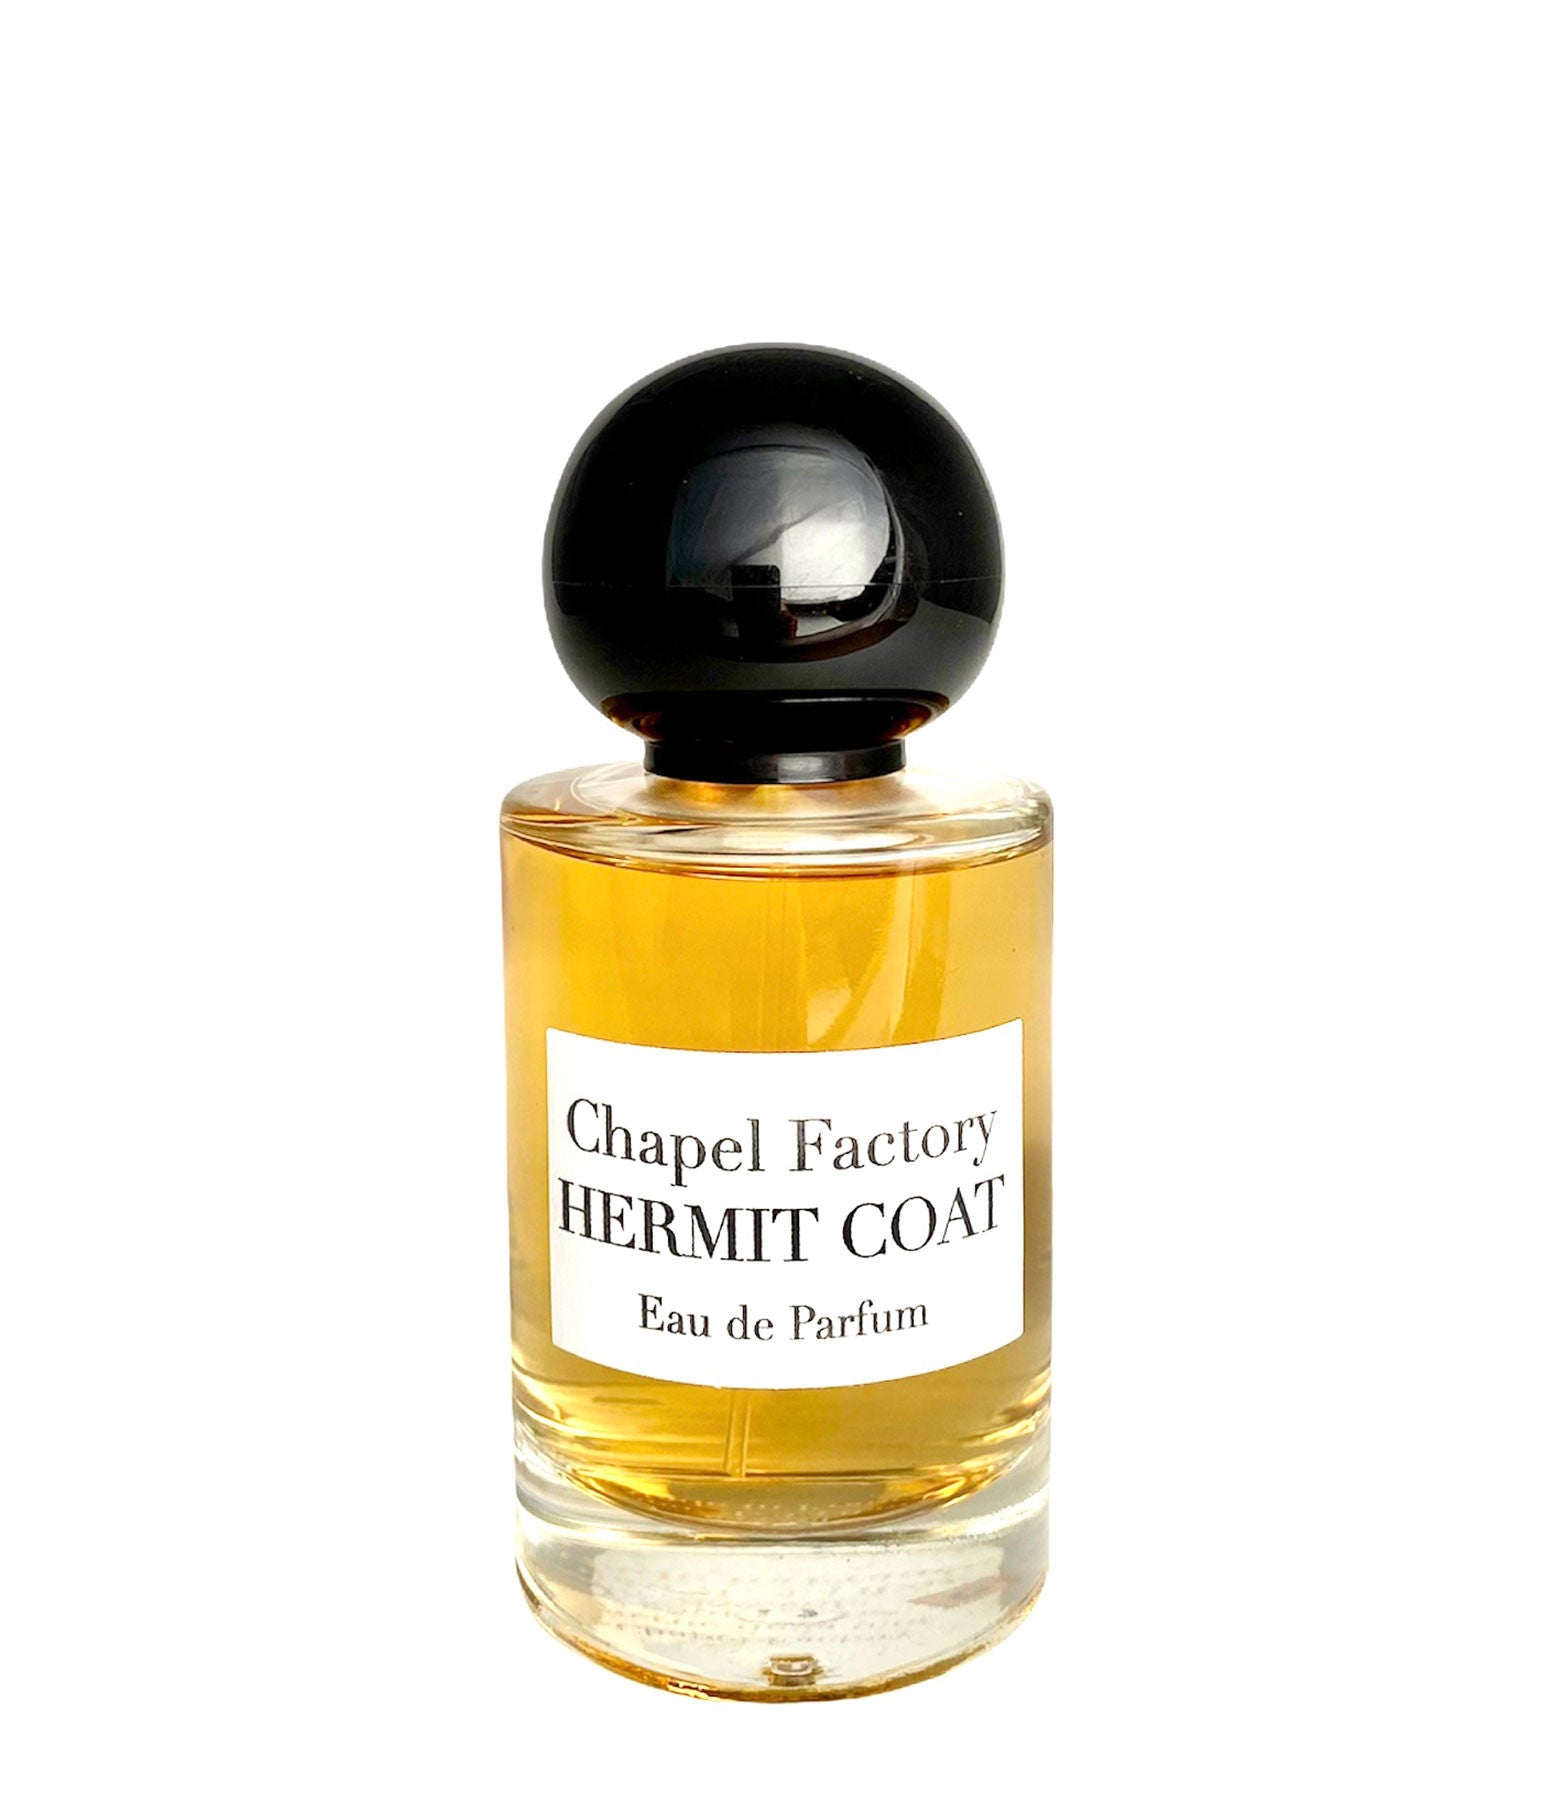 Chapel Factory - Eau De Parfum Hermit Coat